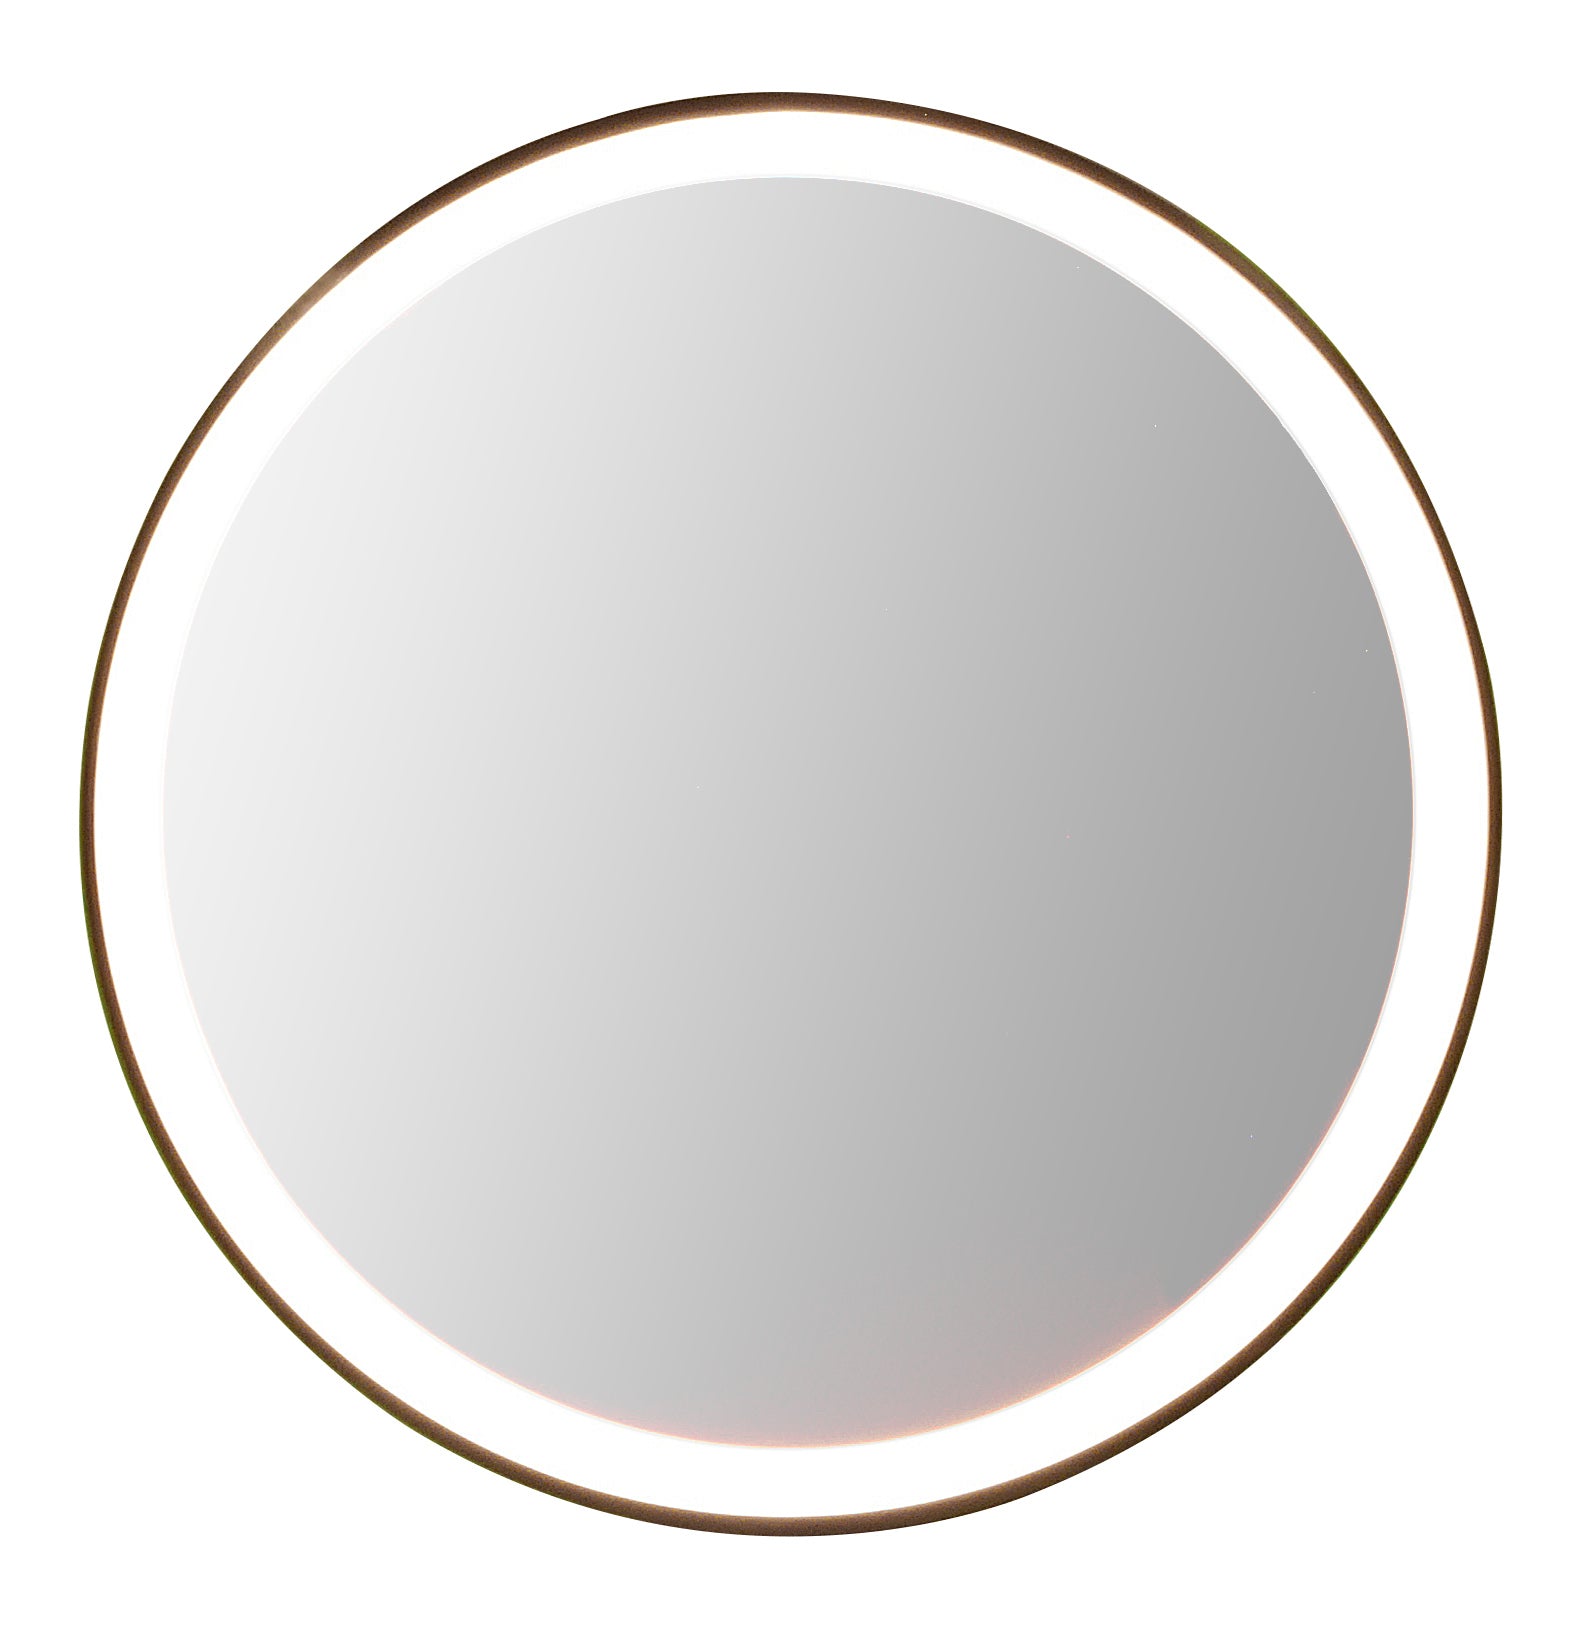 Backlit round mirror